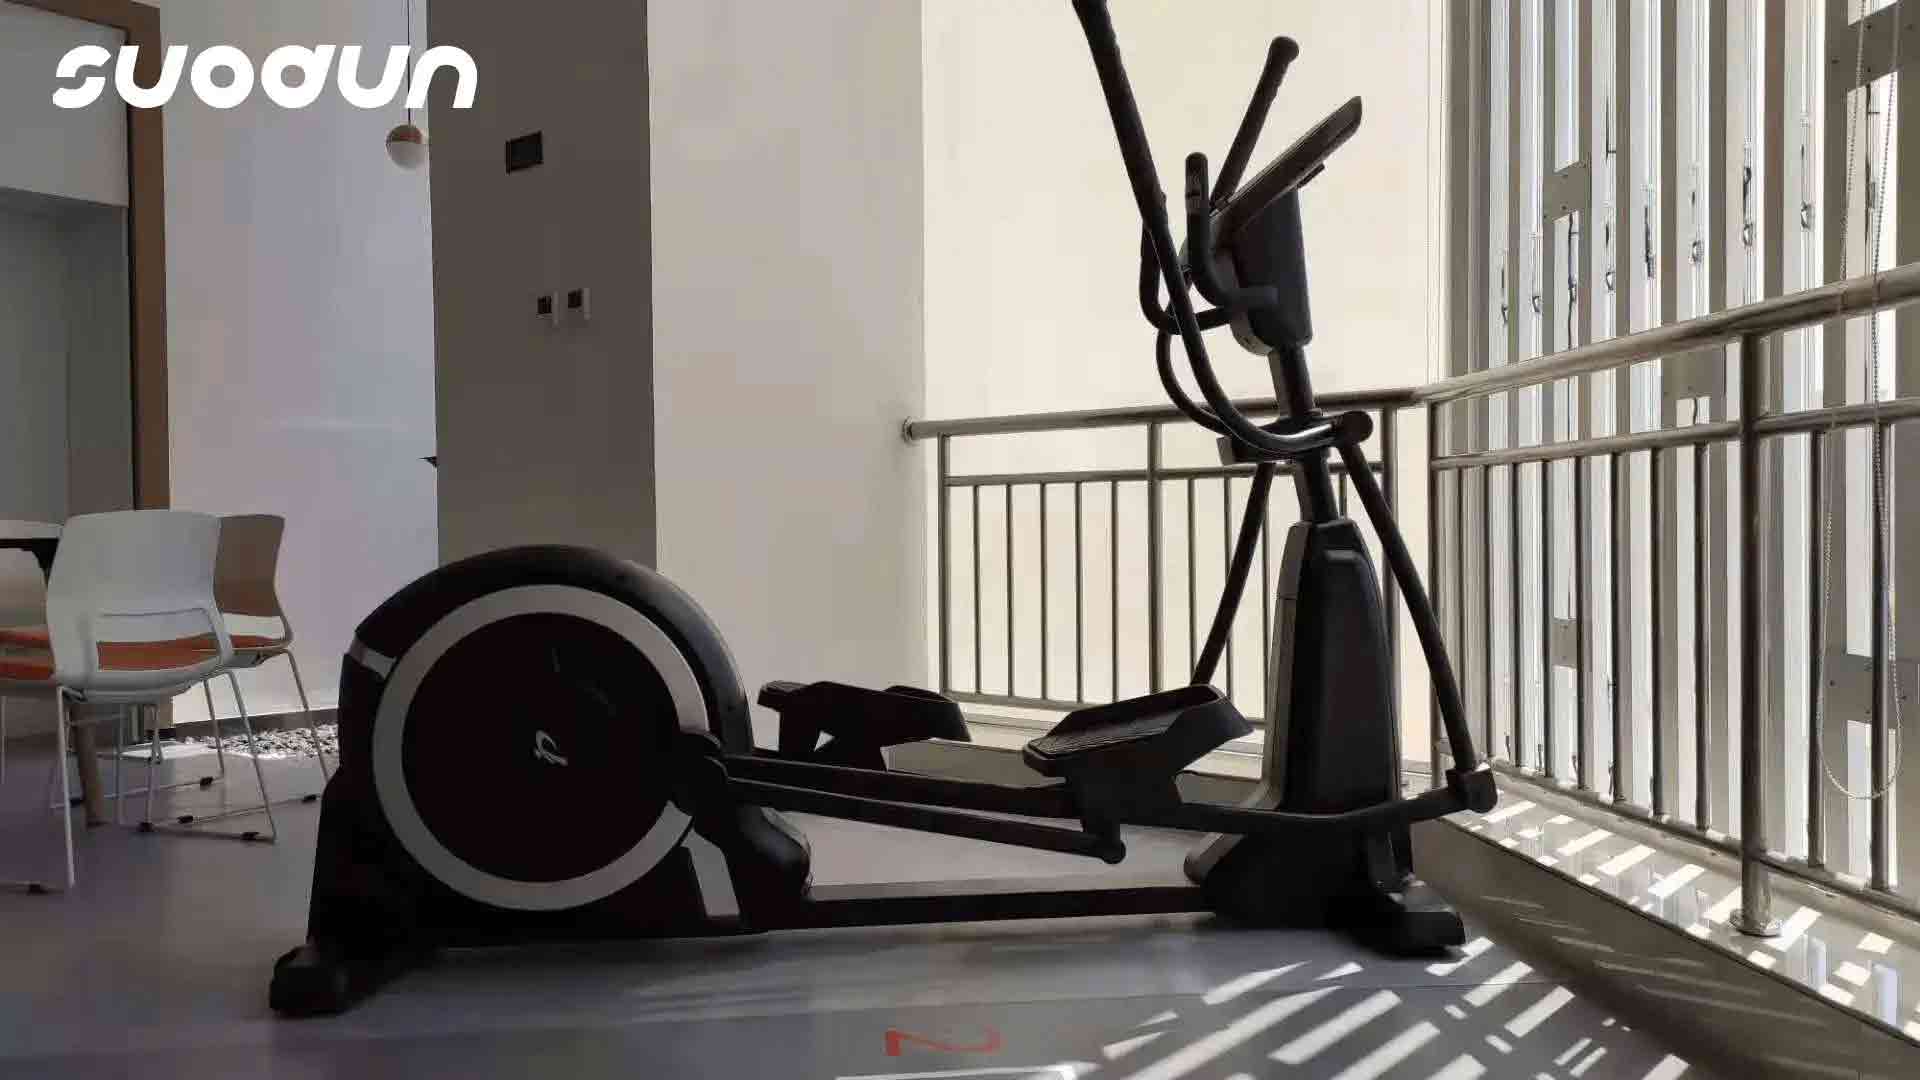 appareil elliptique dans une salle de sport à domicile